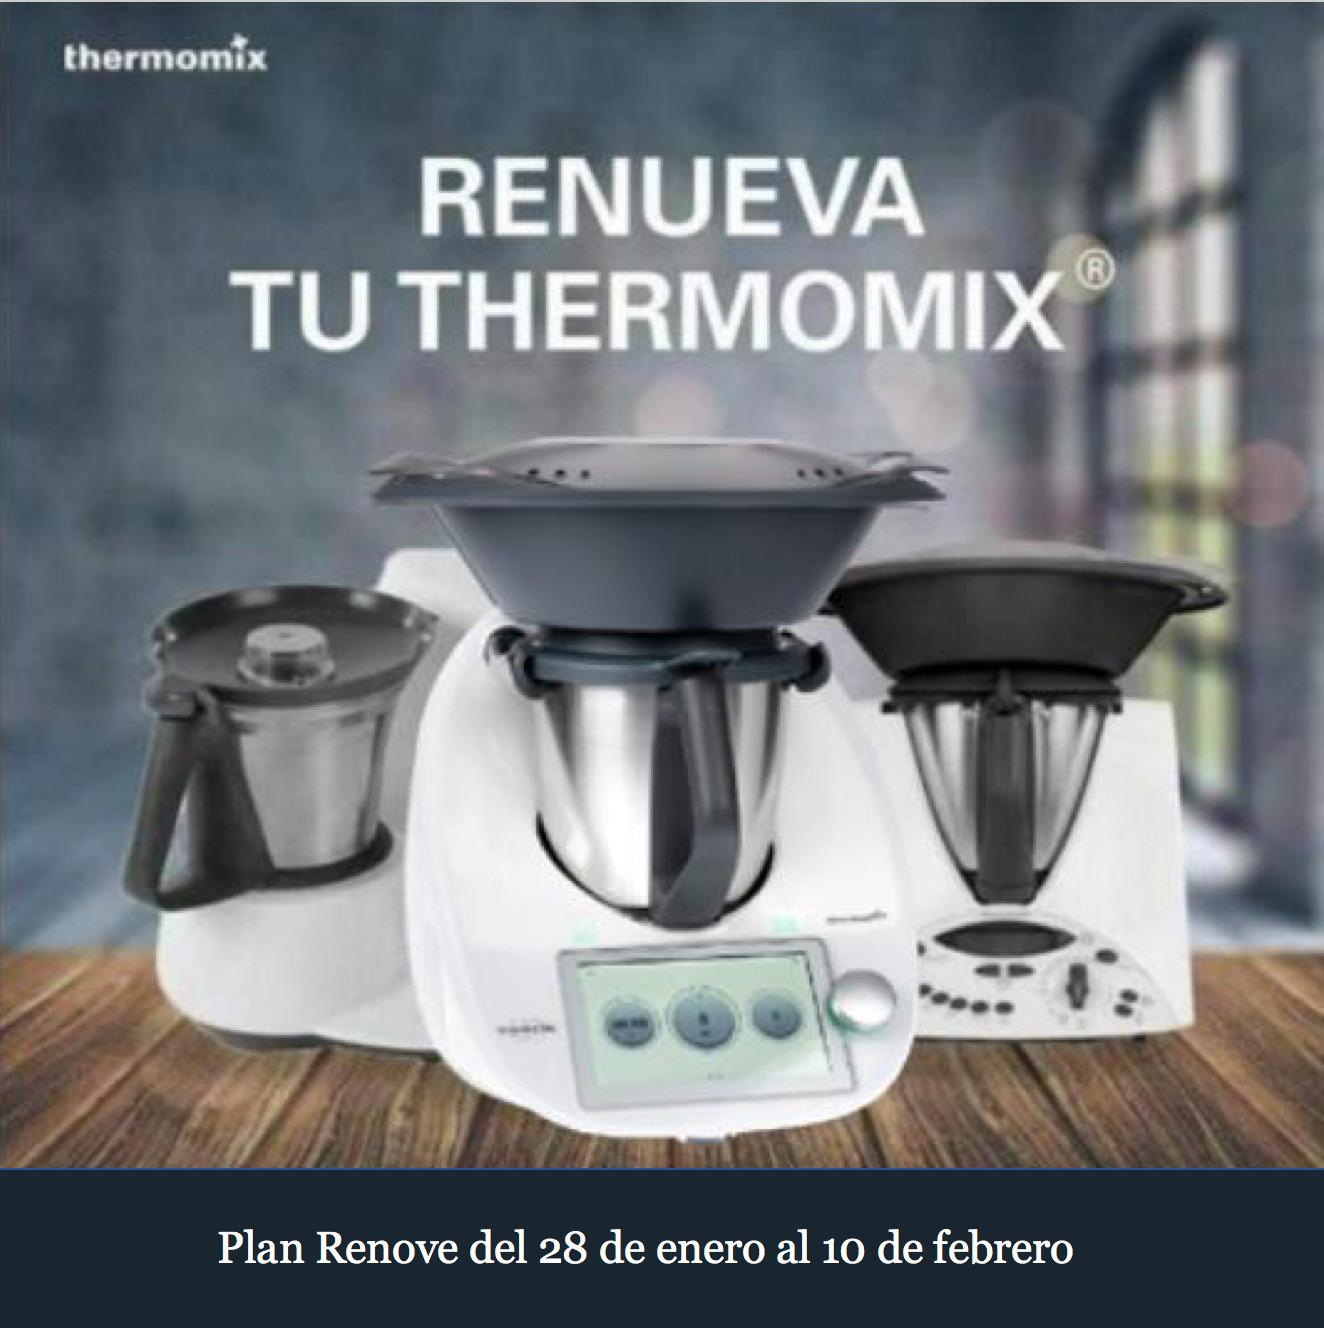 PLAN RENOVE Thermomix® TM31 Y TM21 HASTA EL 10 DE FEBRERO - Noticias Blog -  Blog de SOLEDAD RAMA MACHICADO de Thermomix® Madrid Mendez Alvaro